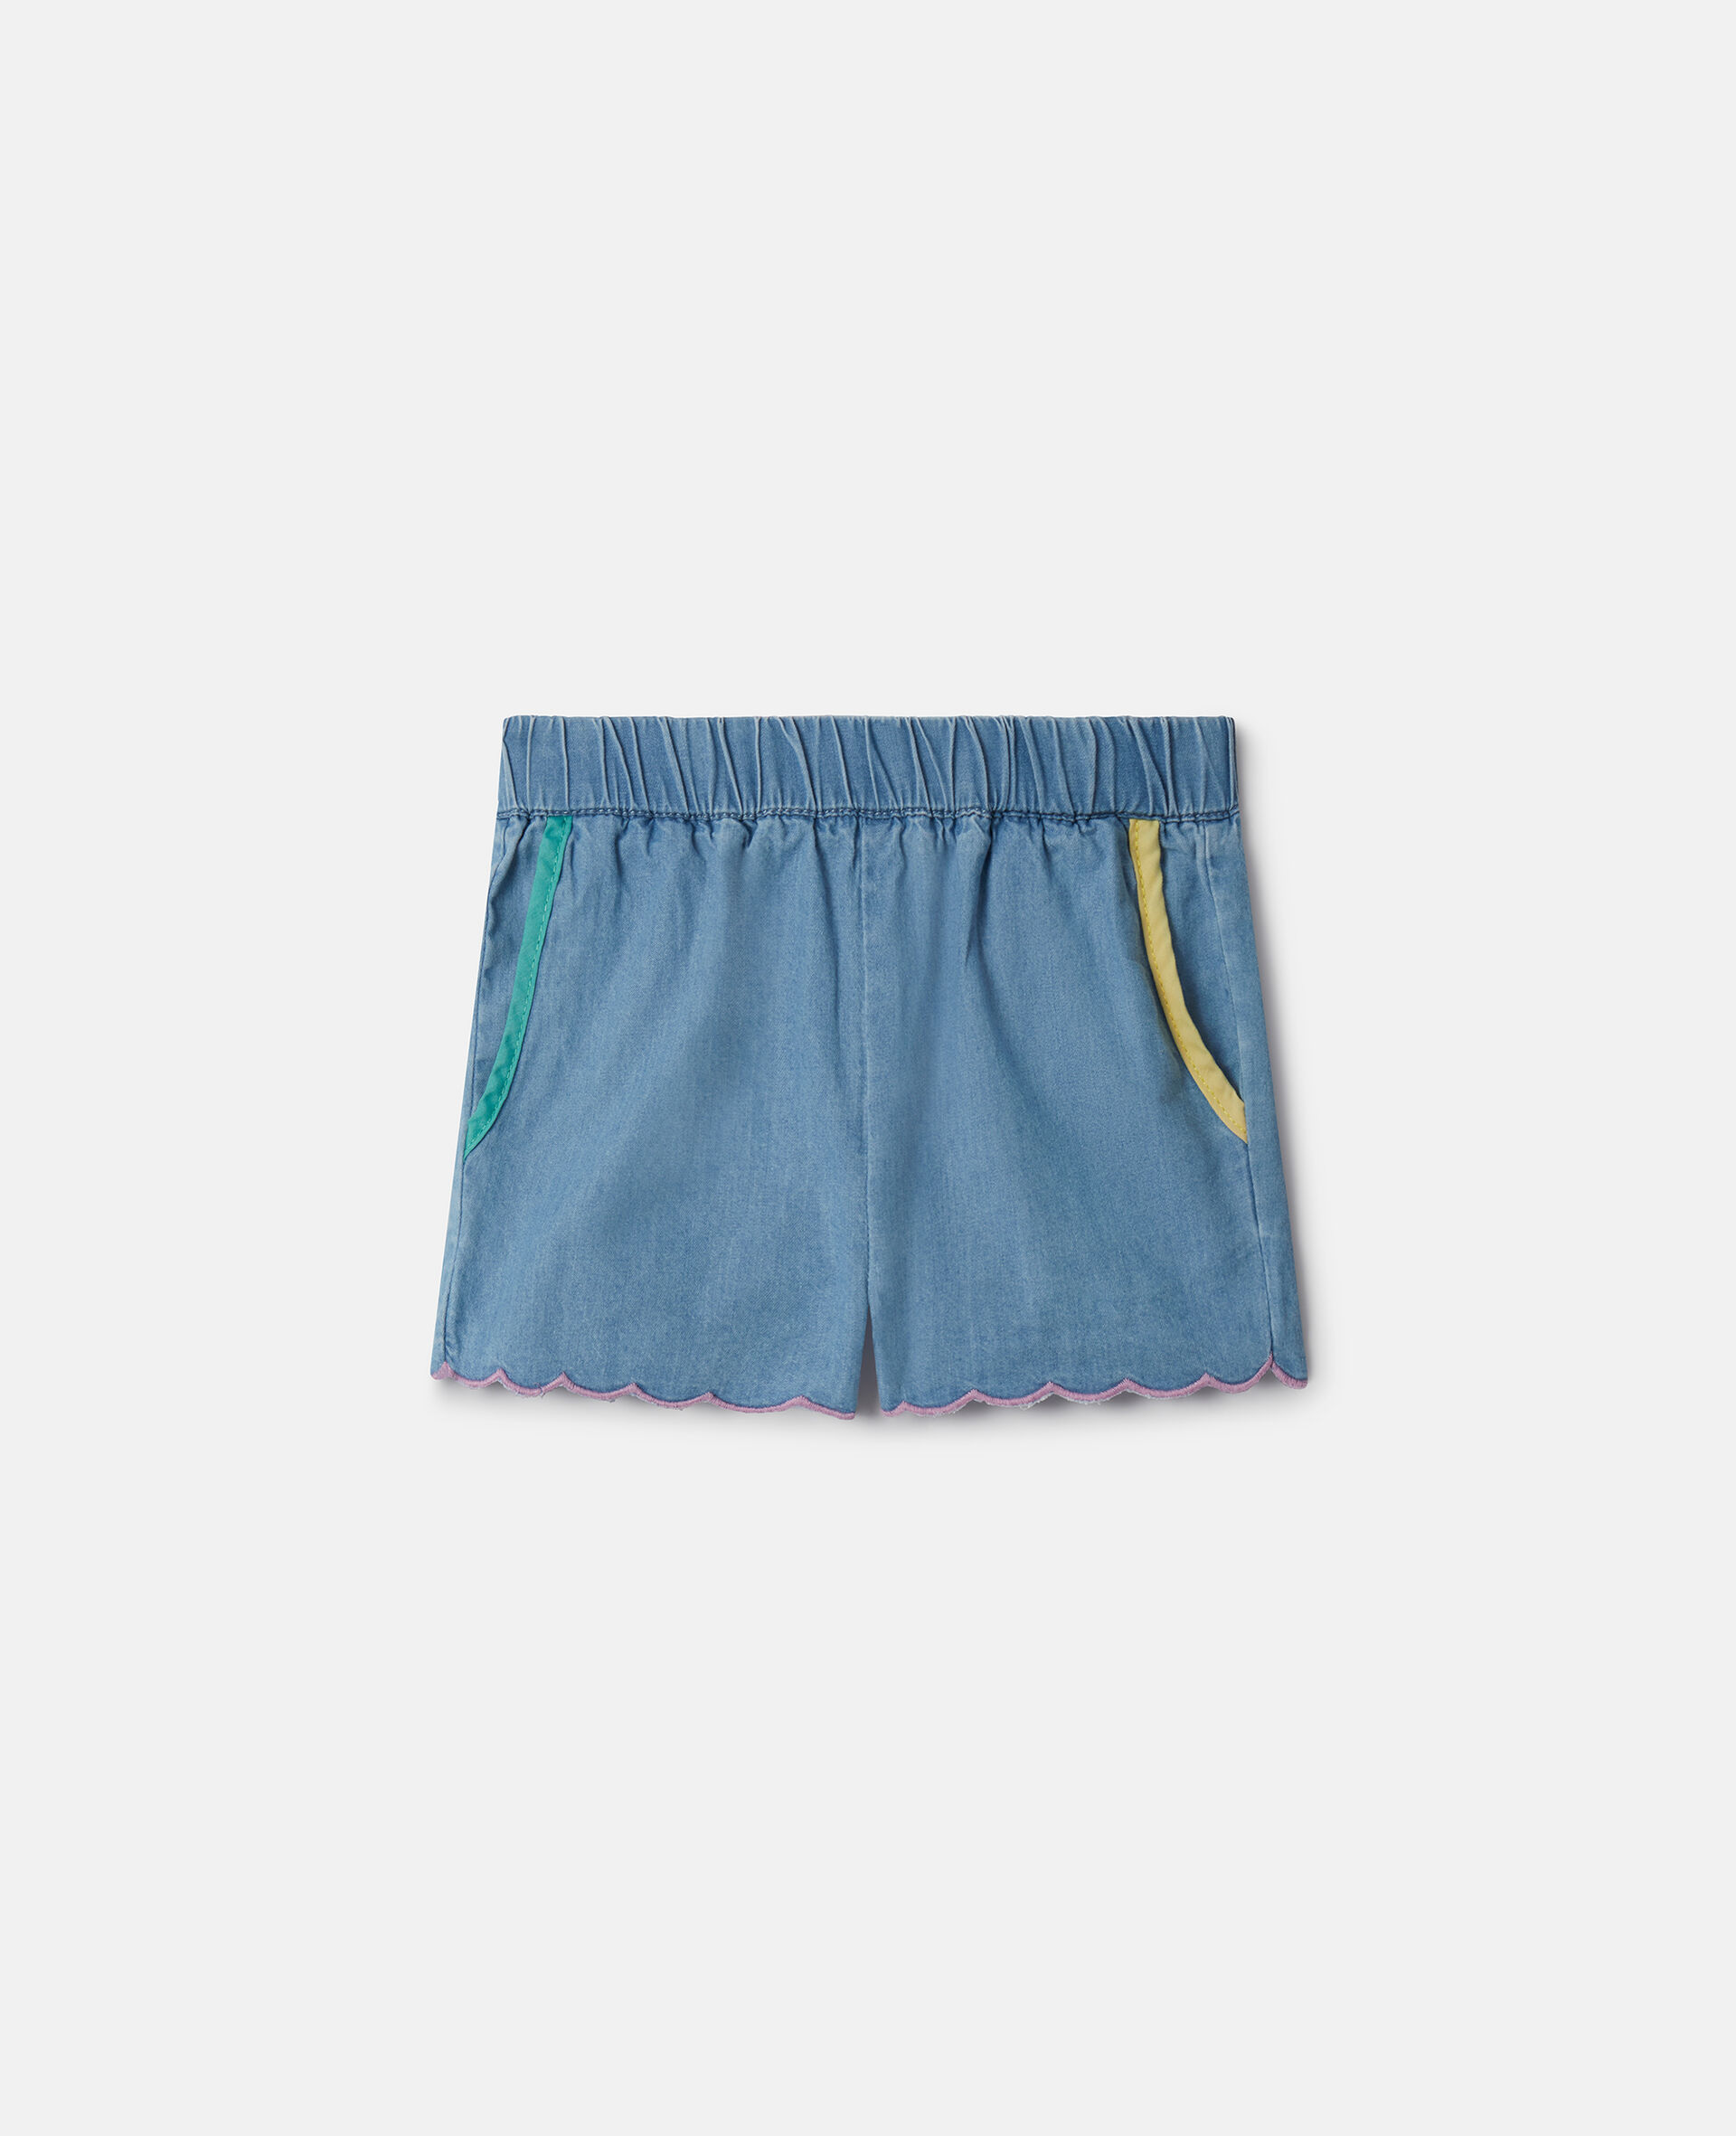 Scalloped Edge Chambray Shorts-Blue-large image number 0